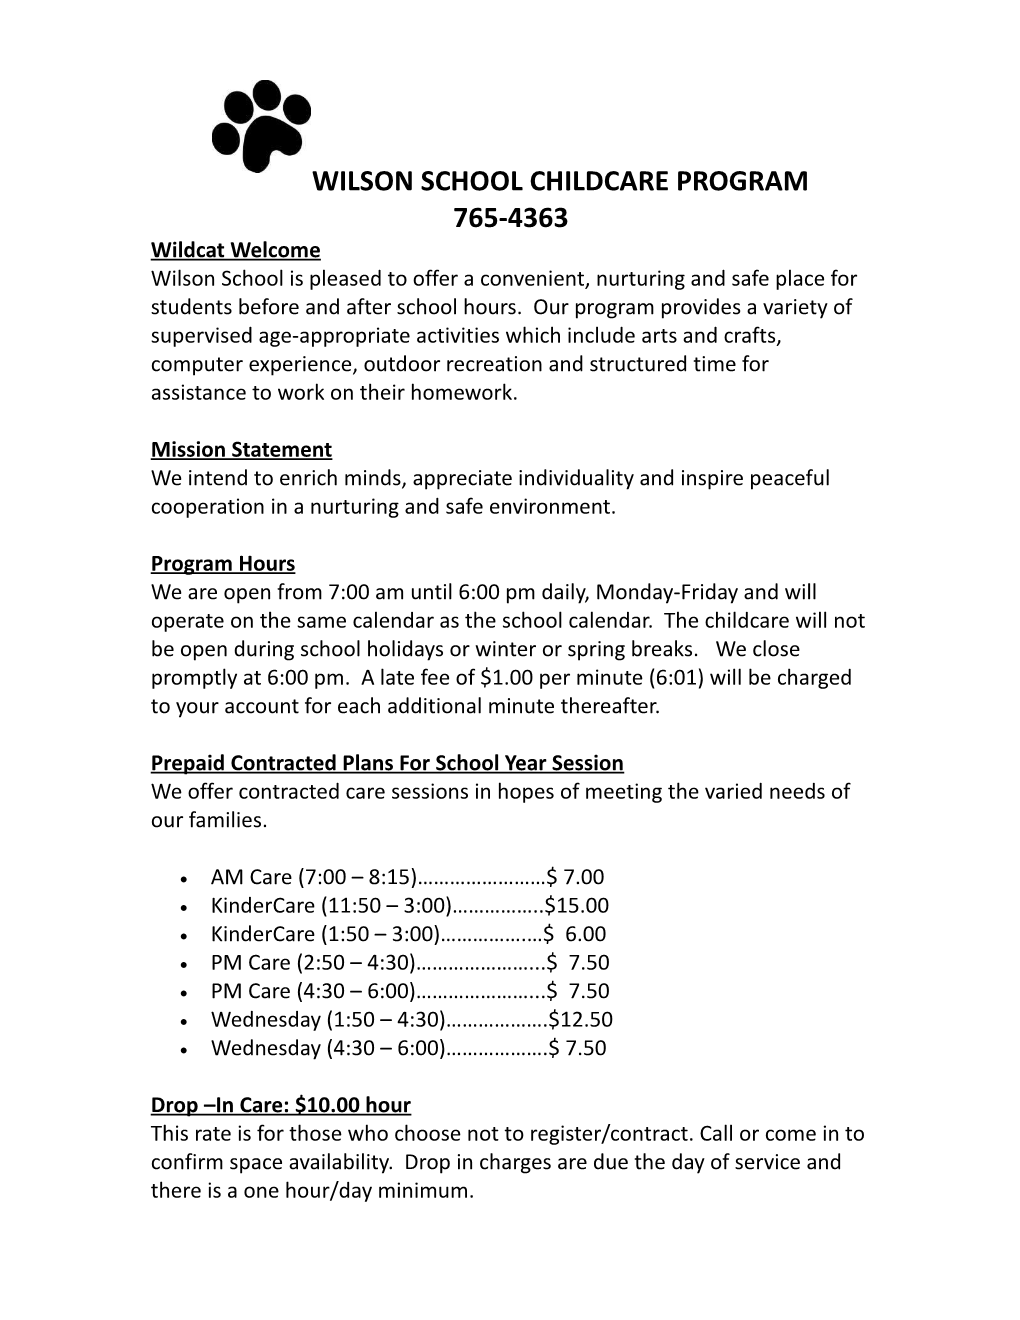 Wilson School Childcare Program